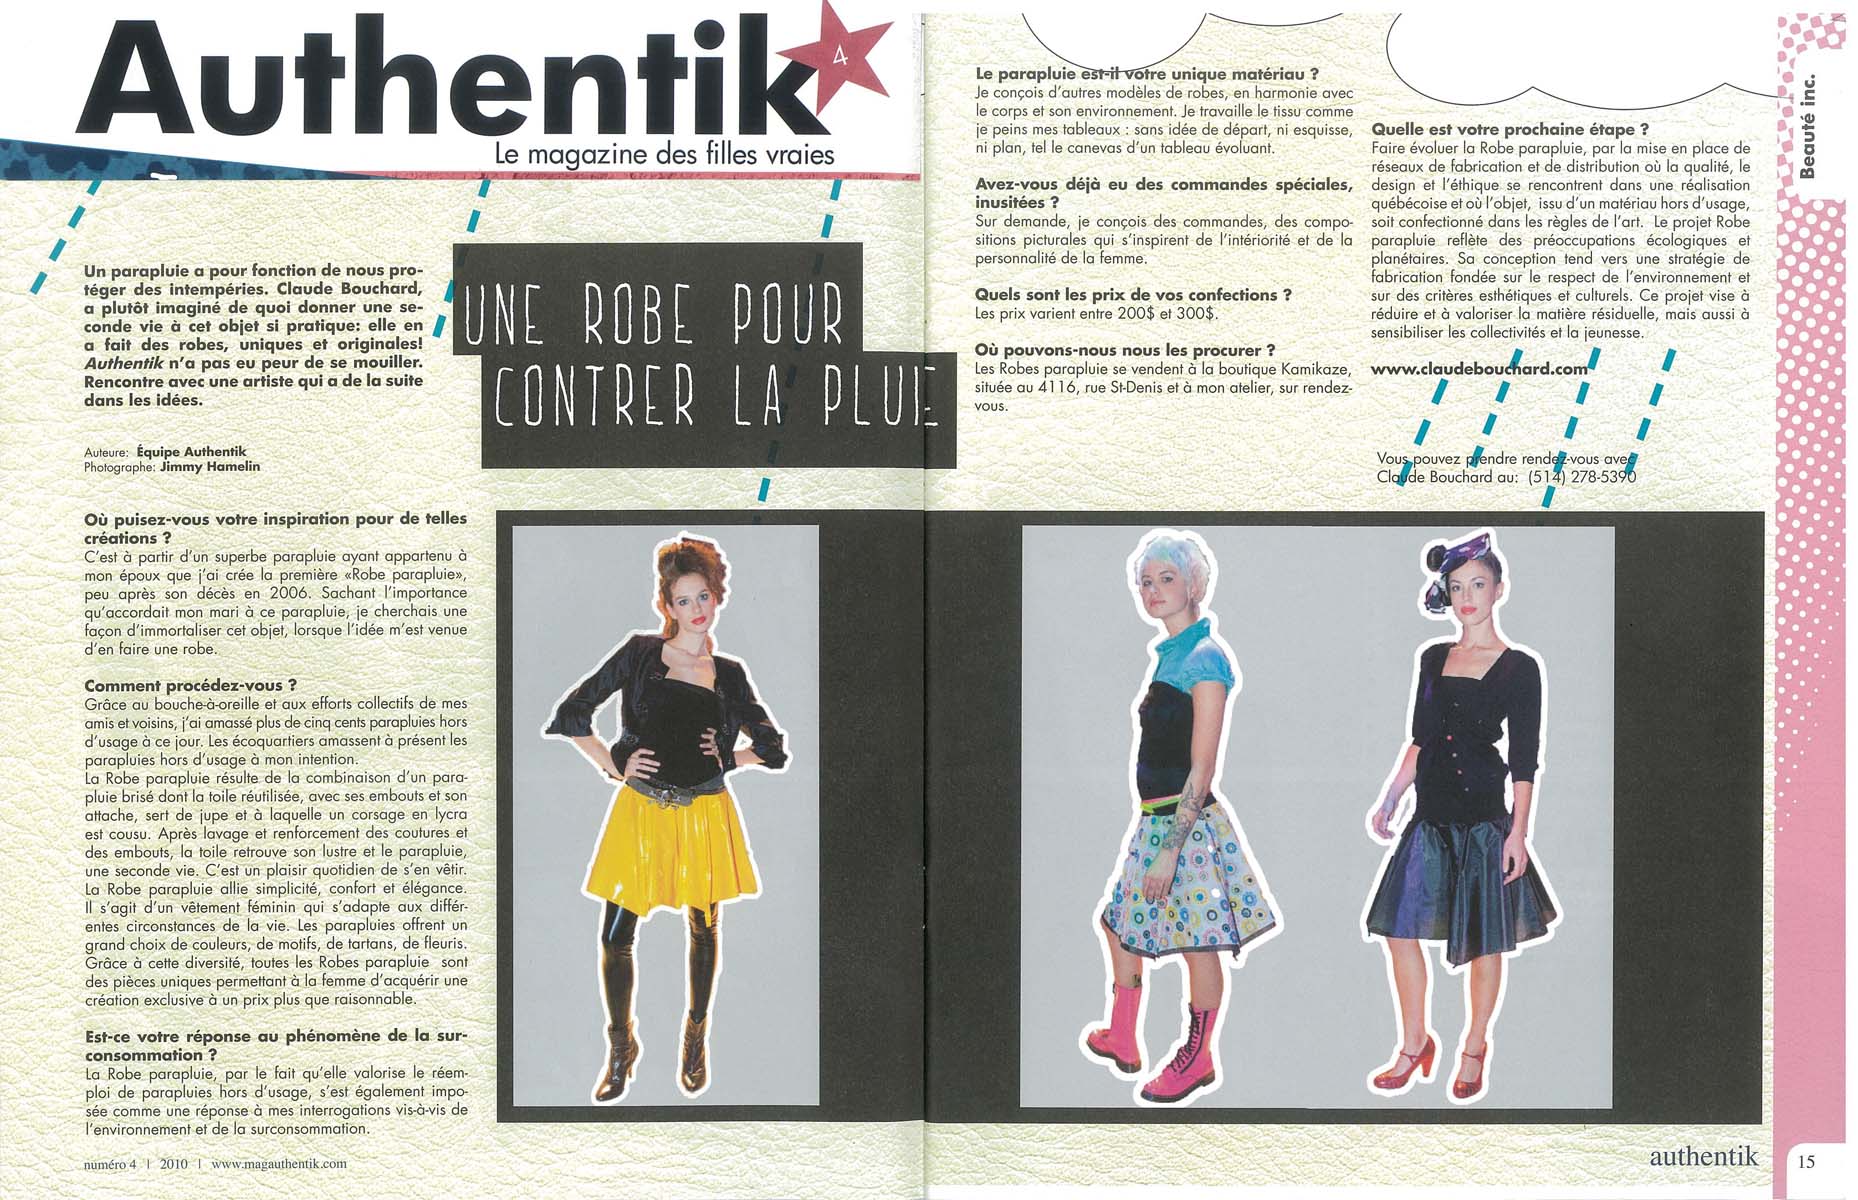 2010 Authentik, no 4, « Une robe pour contrer la pluie », Équipe Authentik